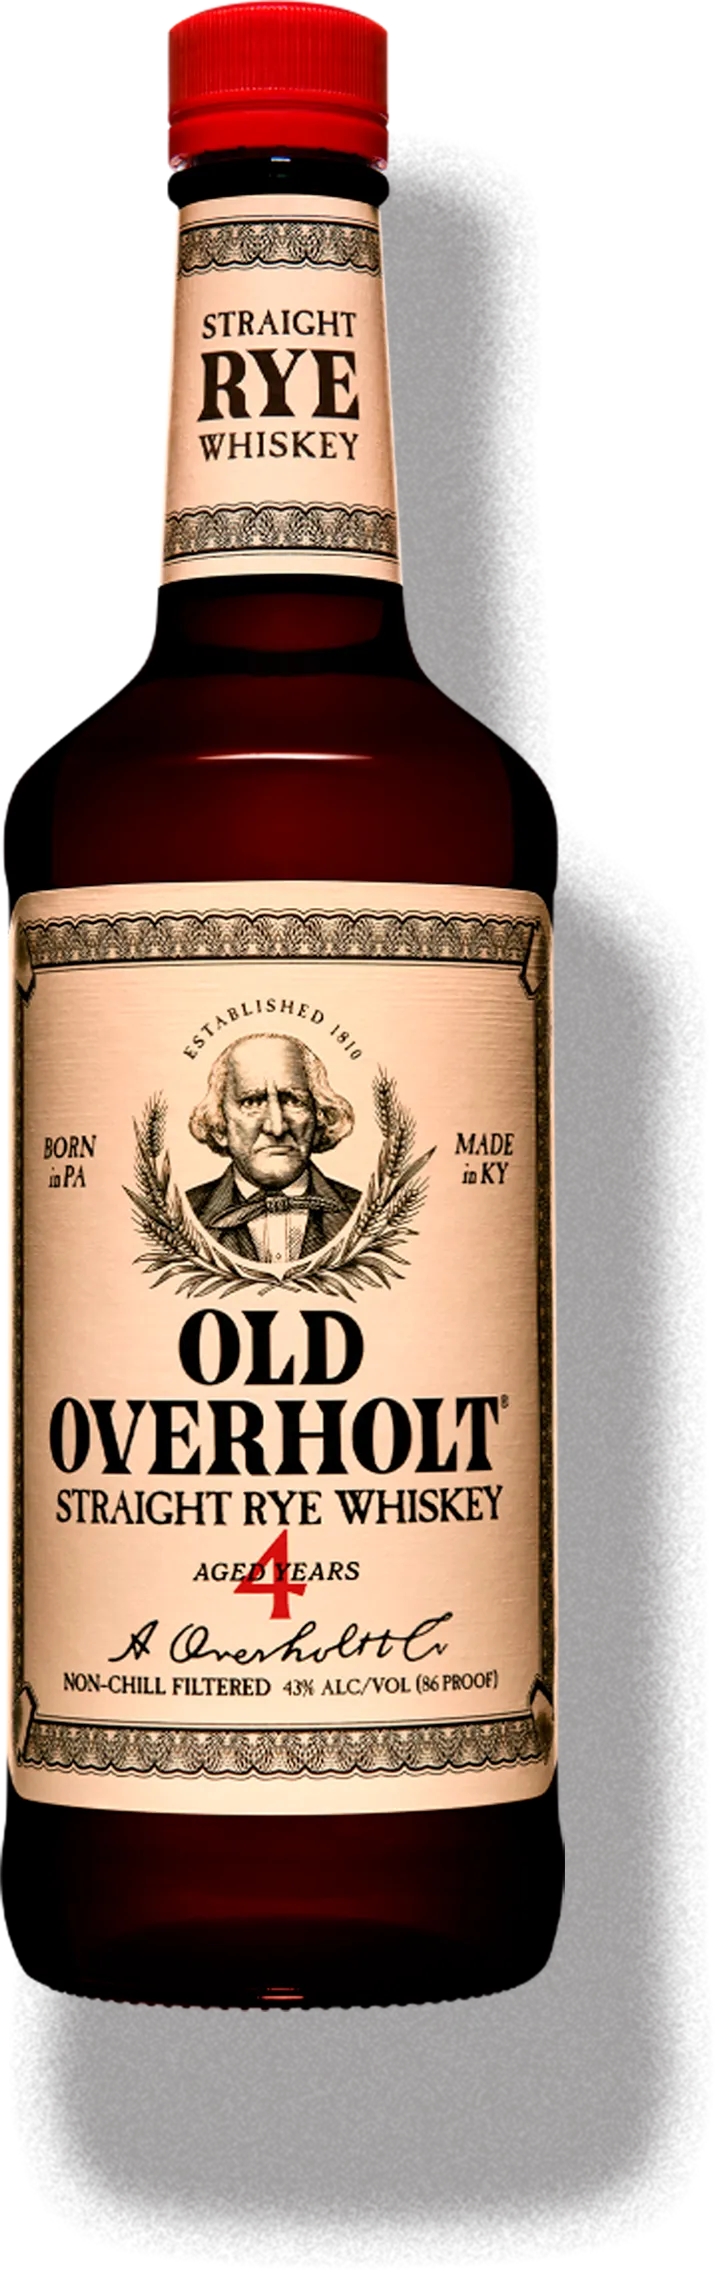 Old Overholt bottle 4 years, Overholt whiskey bottle, American whiskey